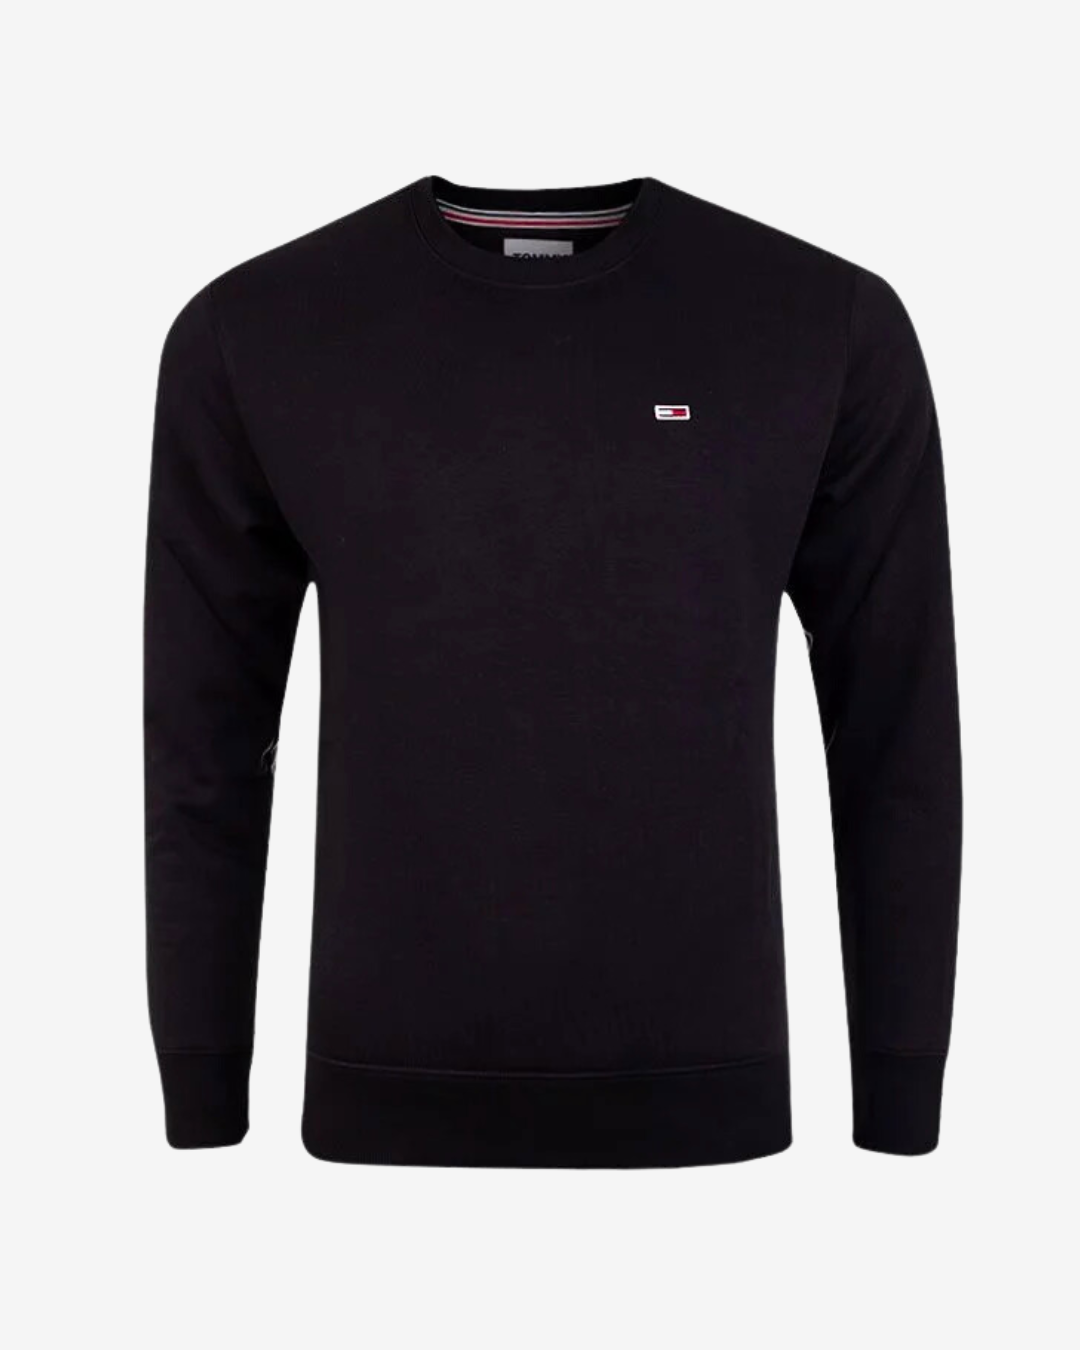 Se Tommy Hilfiger Original logo sweatshirt - Sort - Str. L - Modish.dk hos Modish.dk